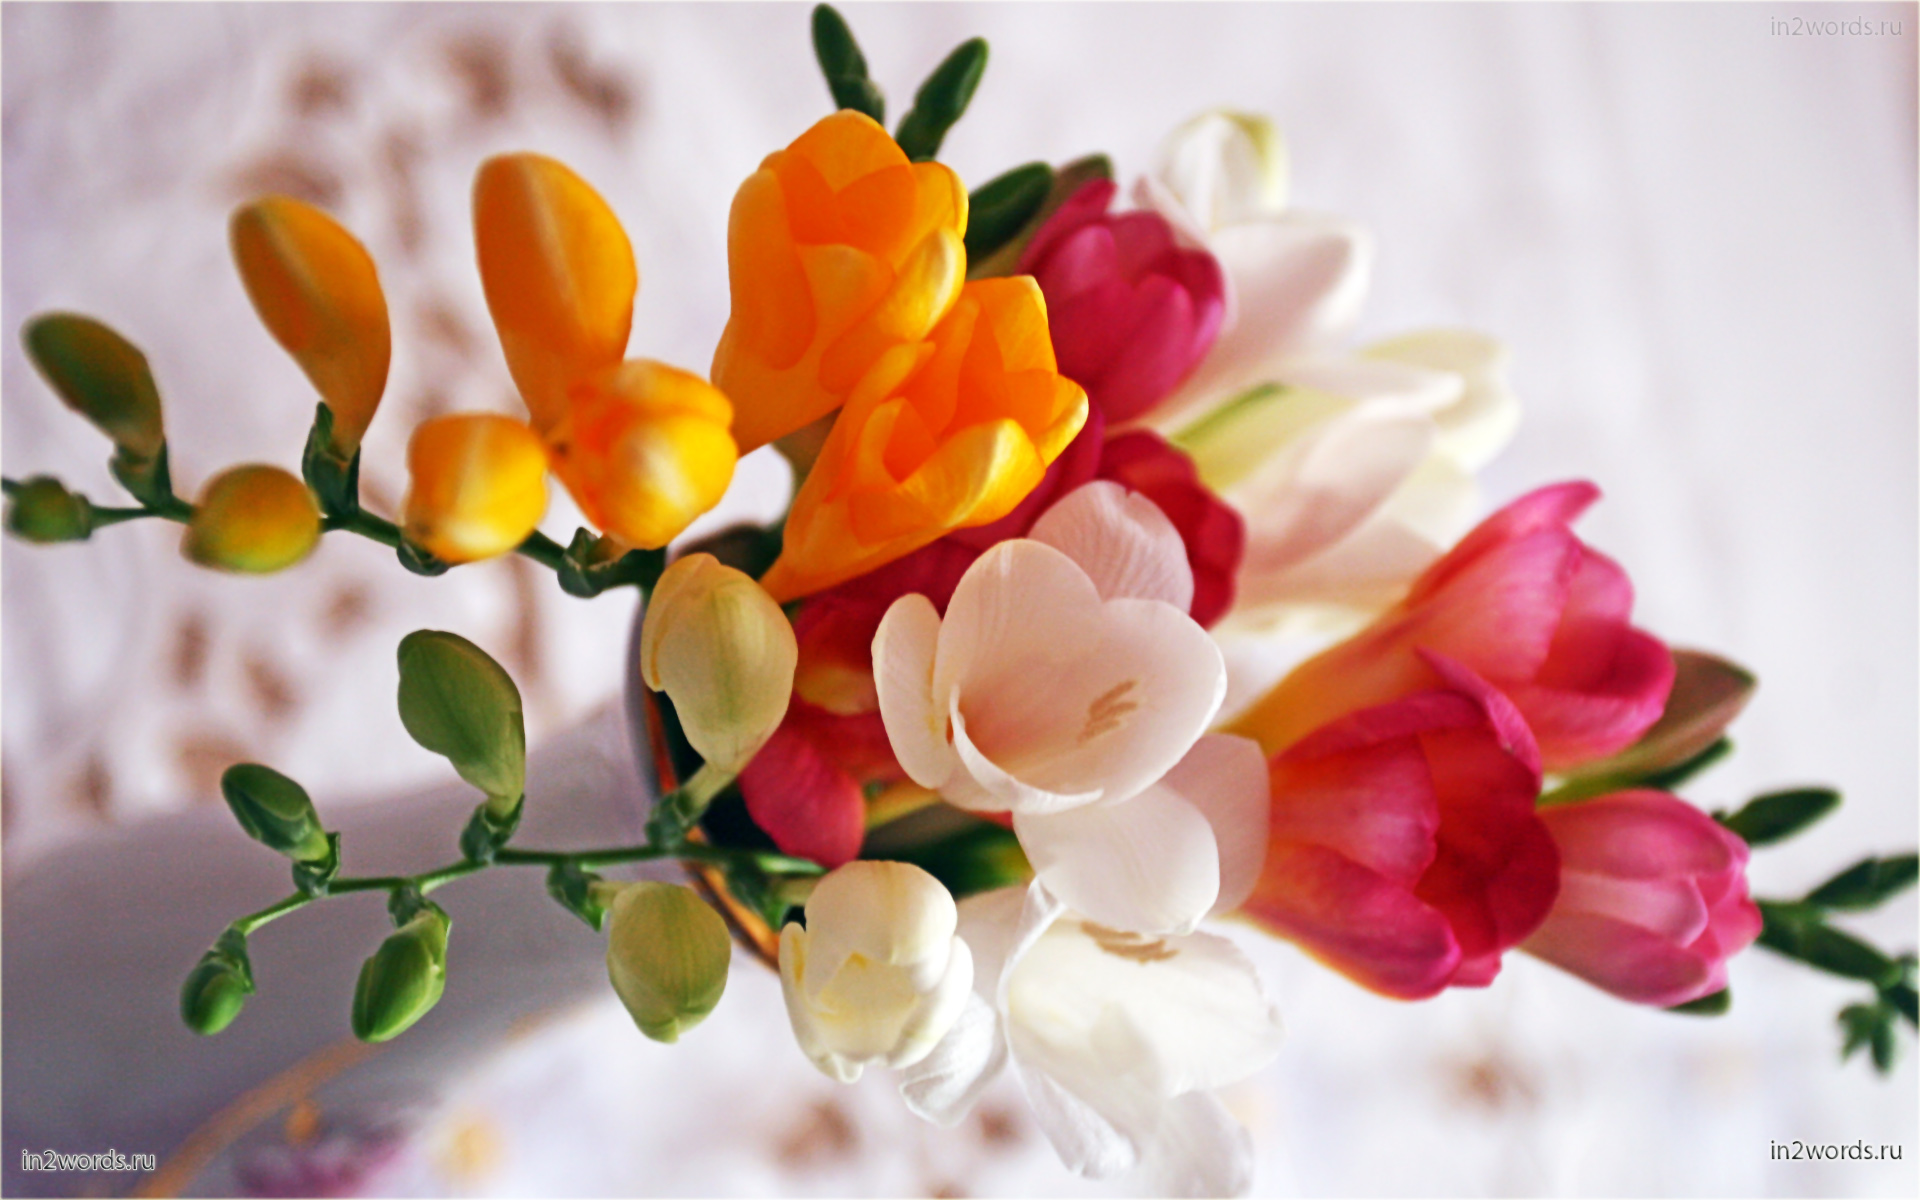 Фрезии. Очень нежные и ароматные весенние цветы в маленьком букете.